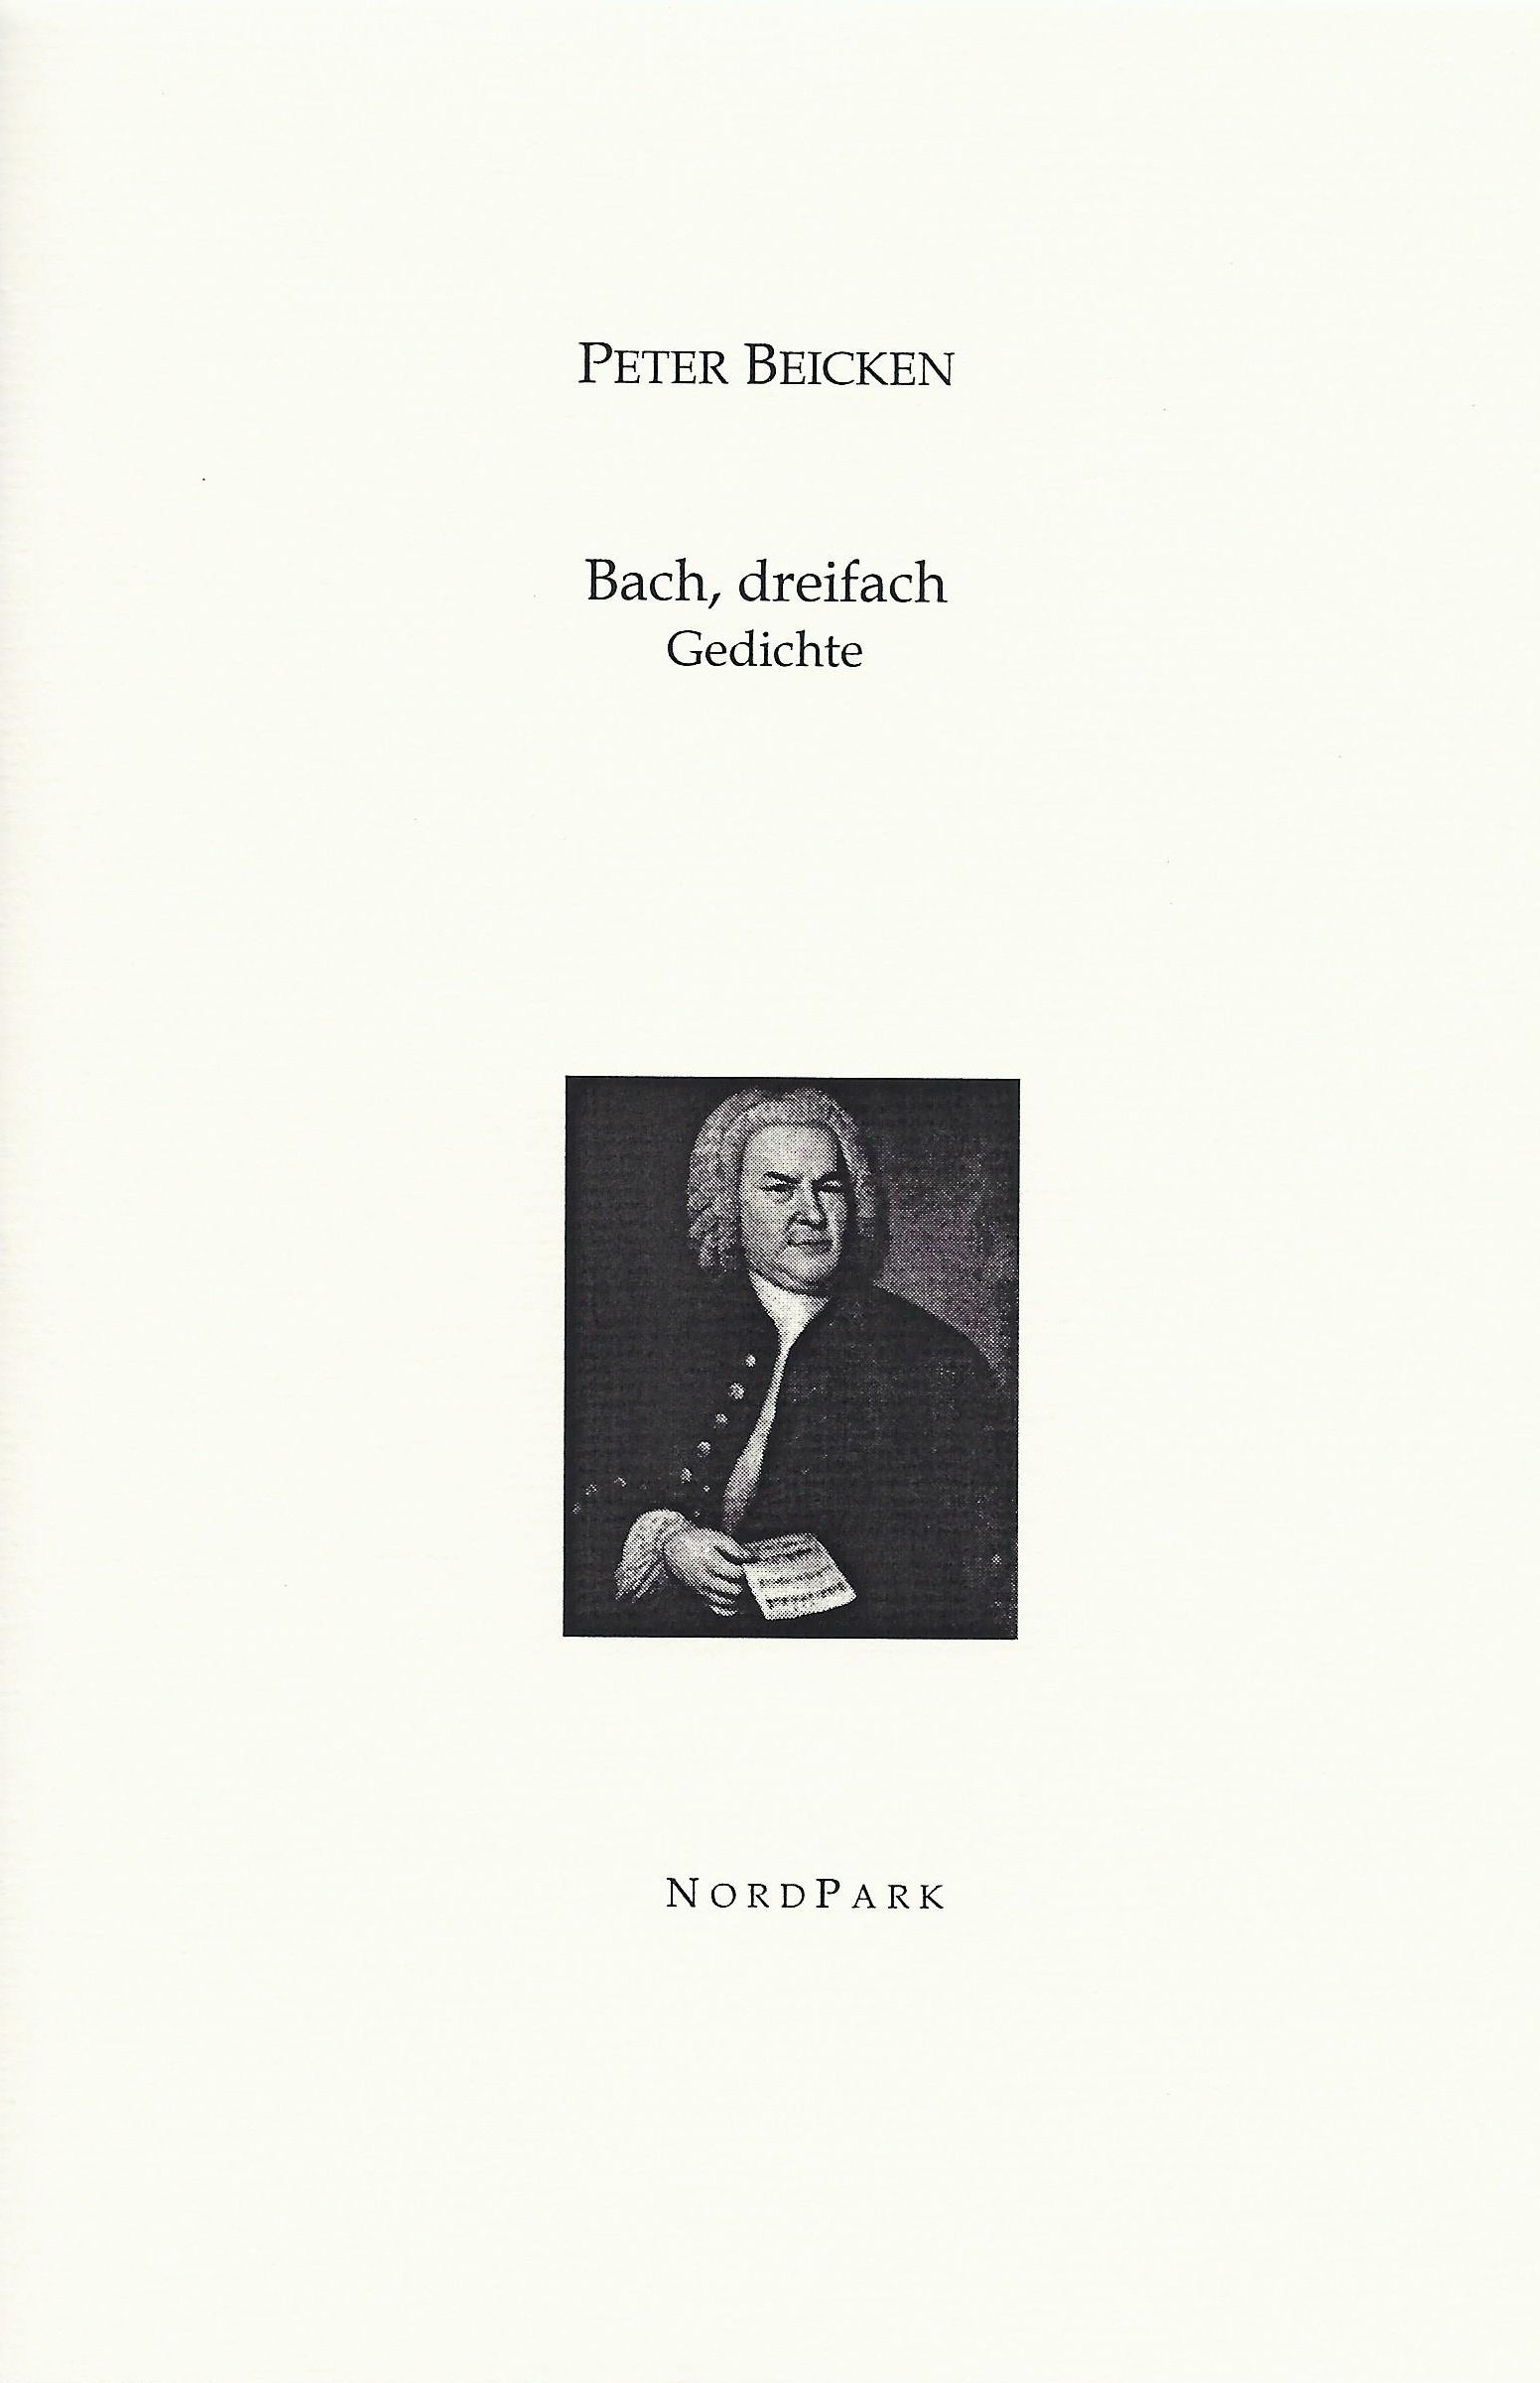 Die Besonderen Hefte: Beicken-Bach dreifach